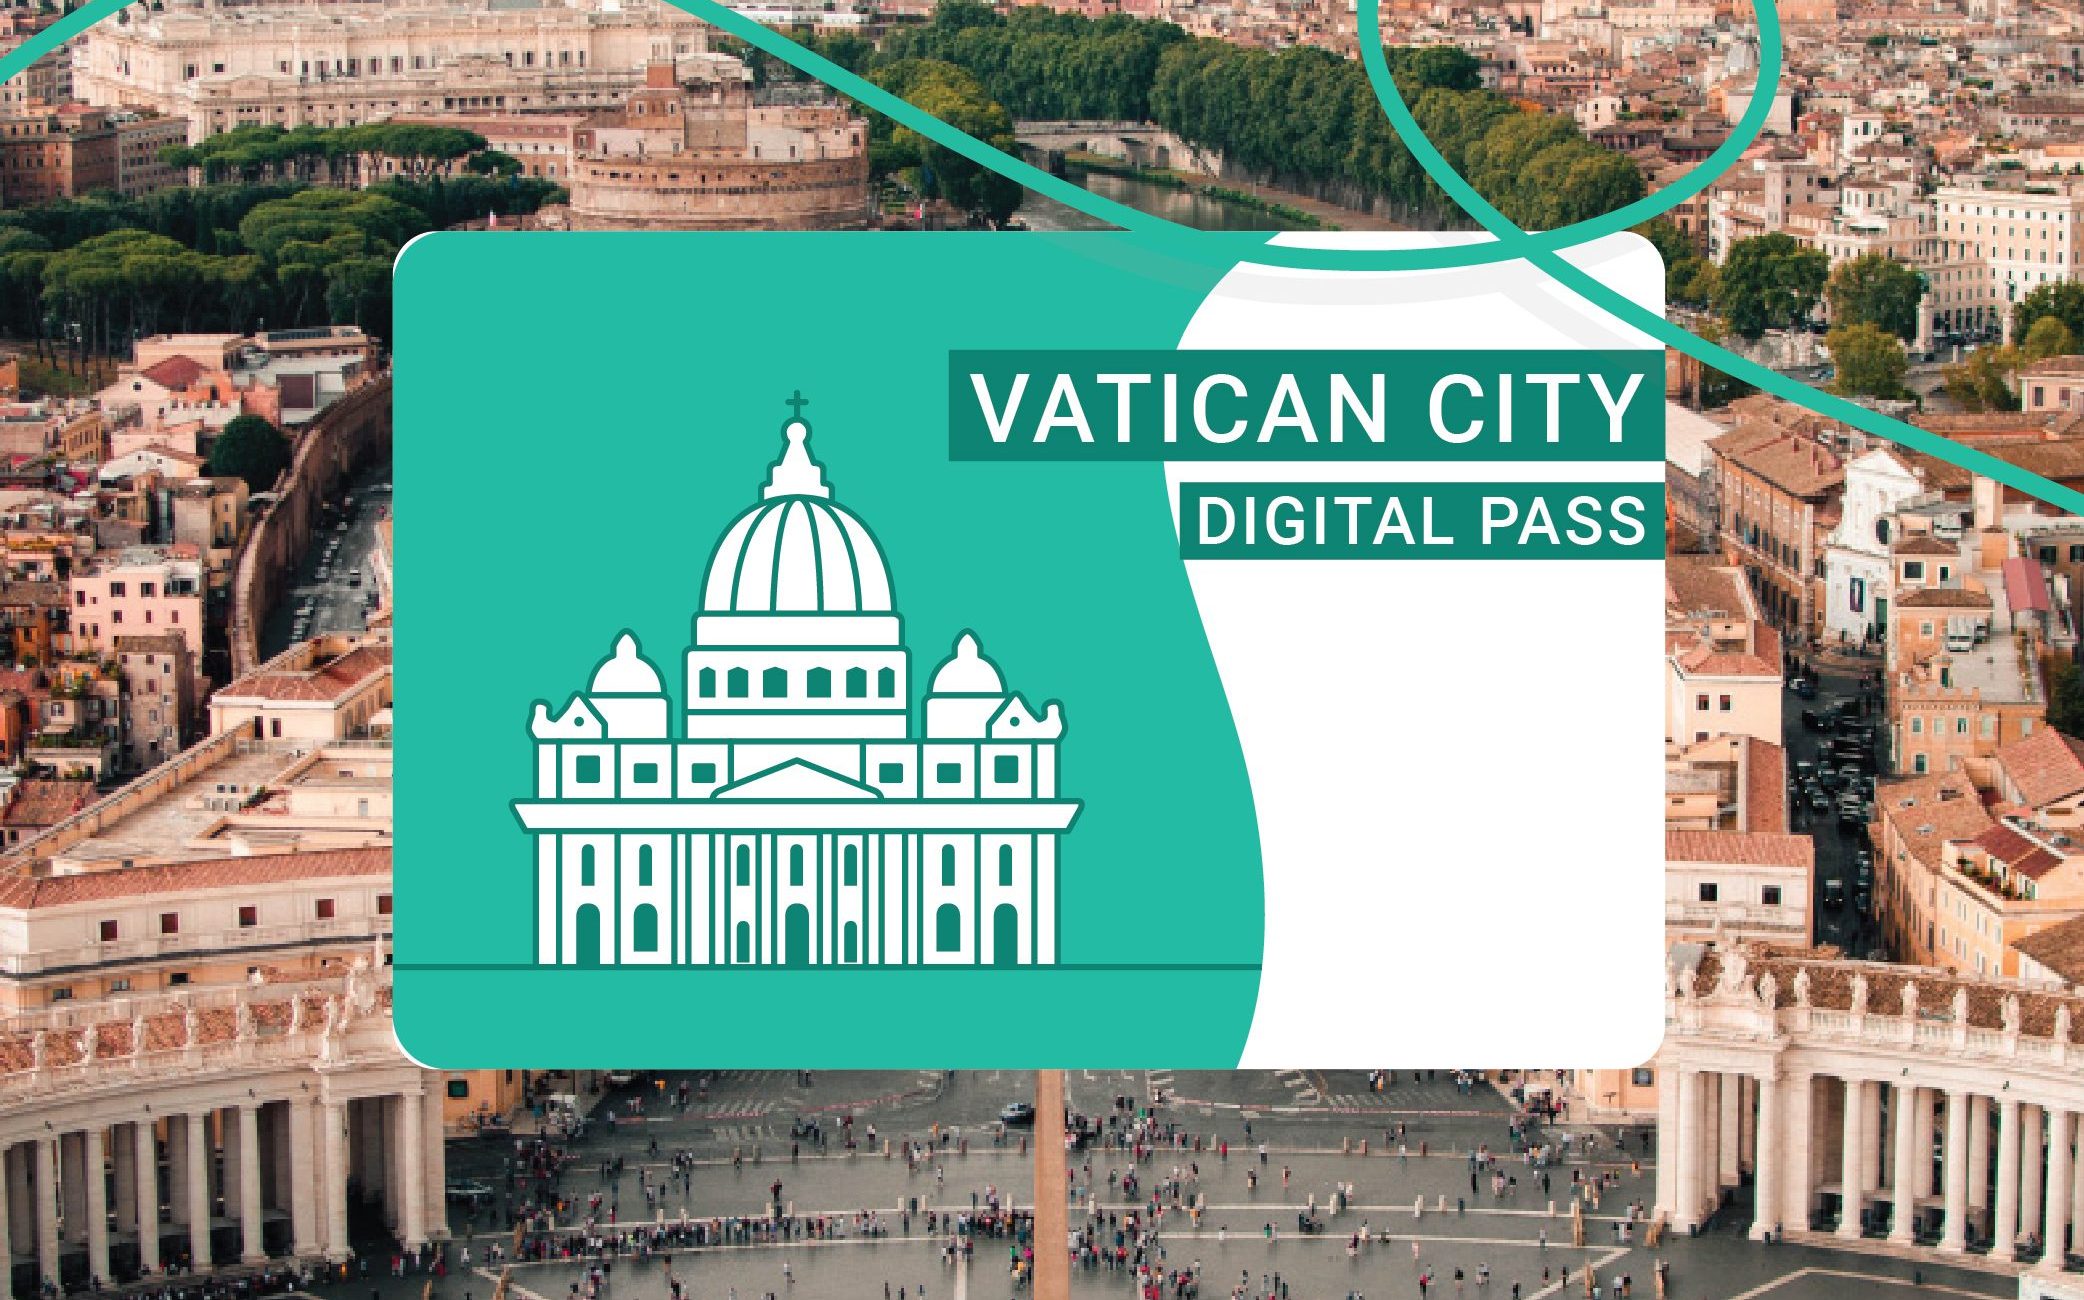 Vaticaanstad pas Rome tickets Vaticaan